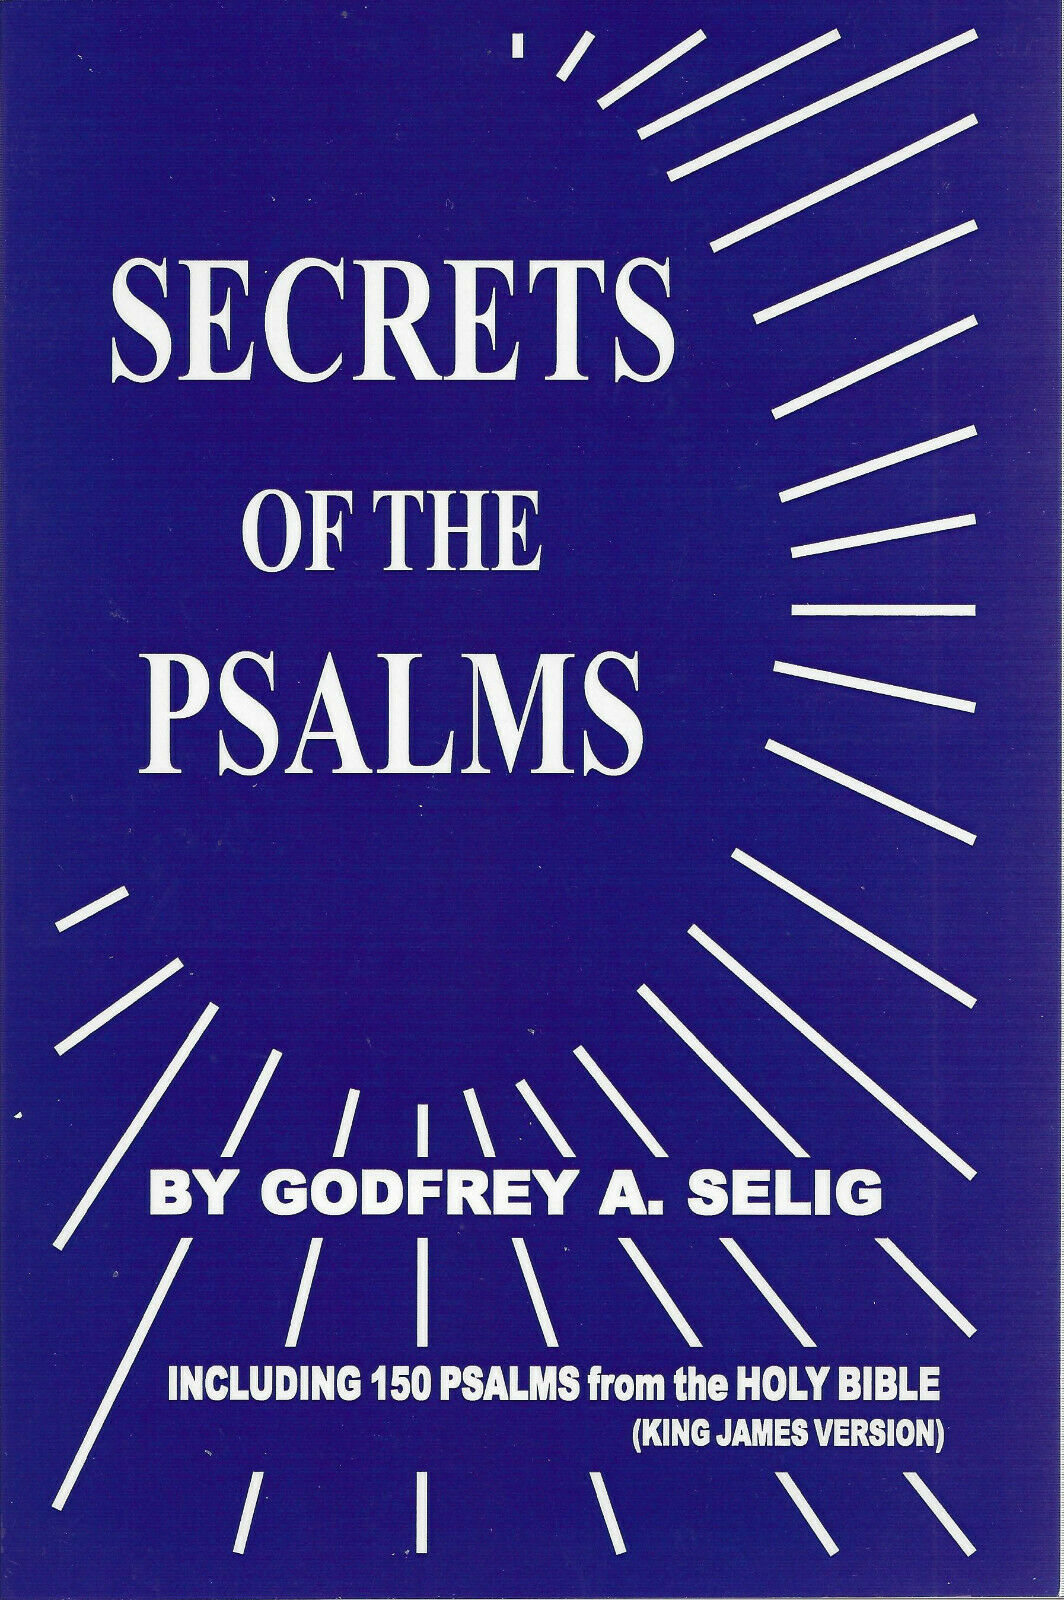 secrets of the psalms by godfrey a. selig pdf